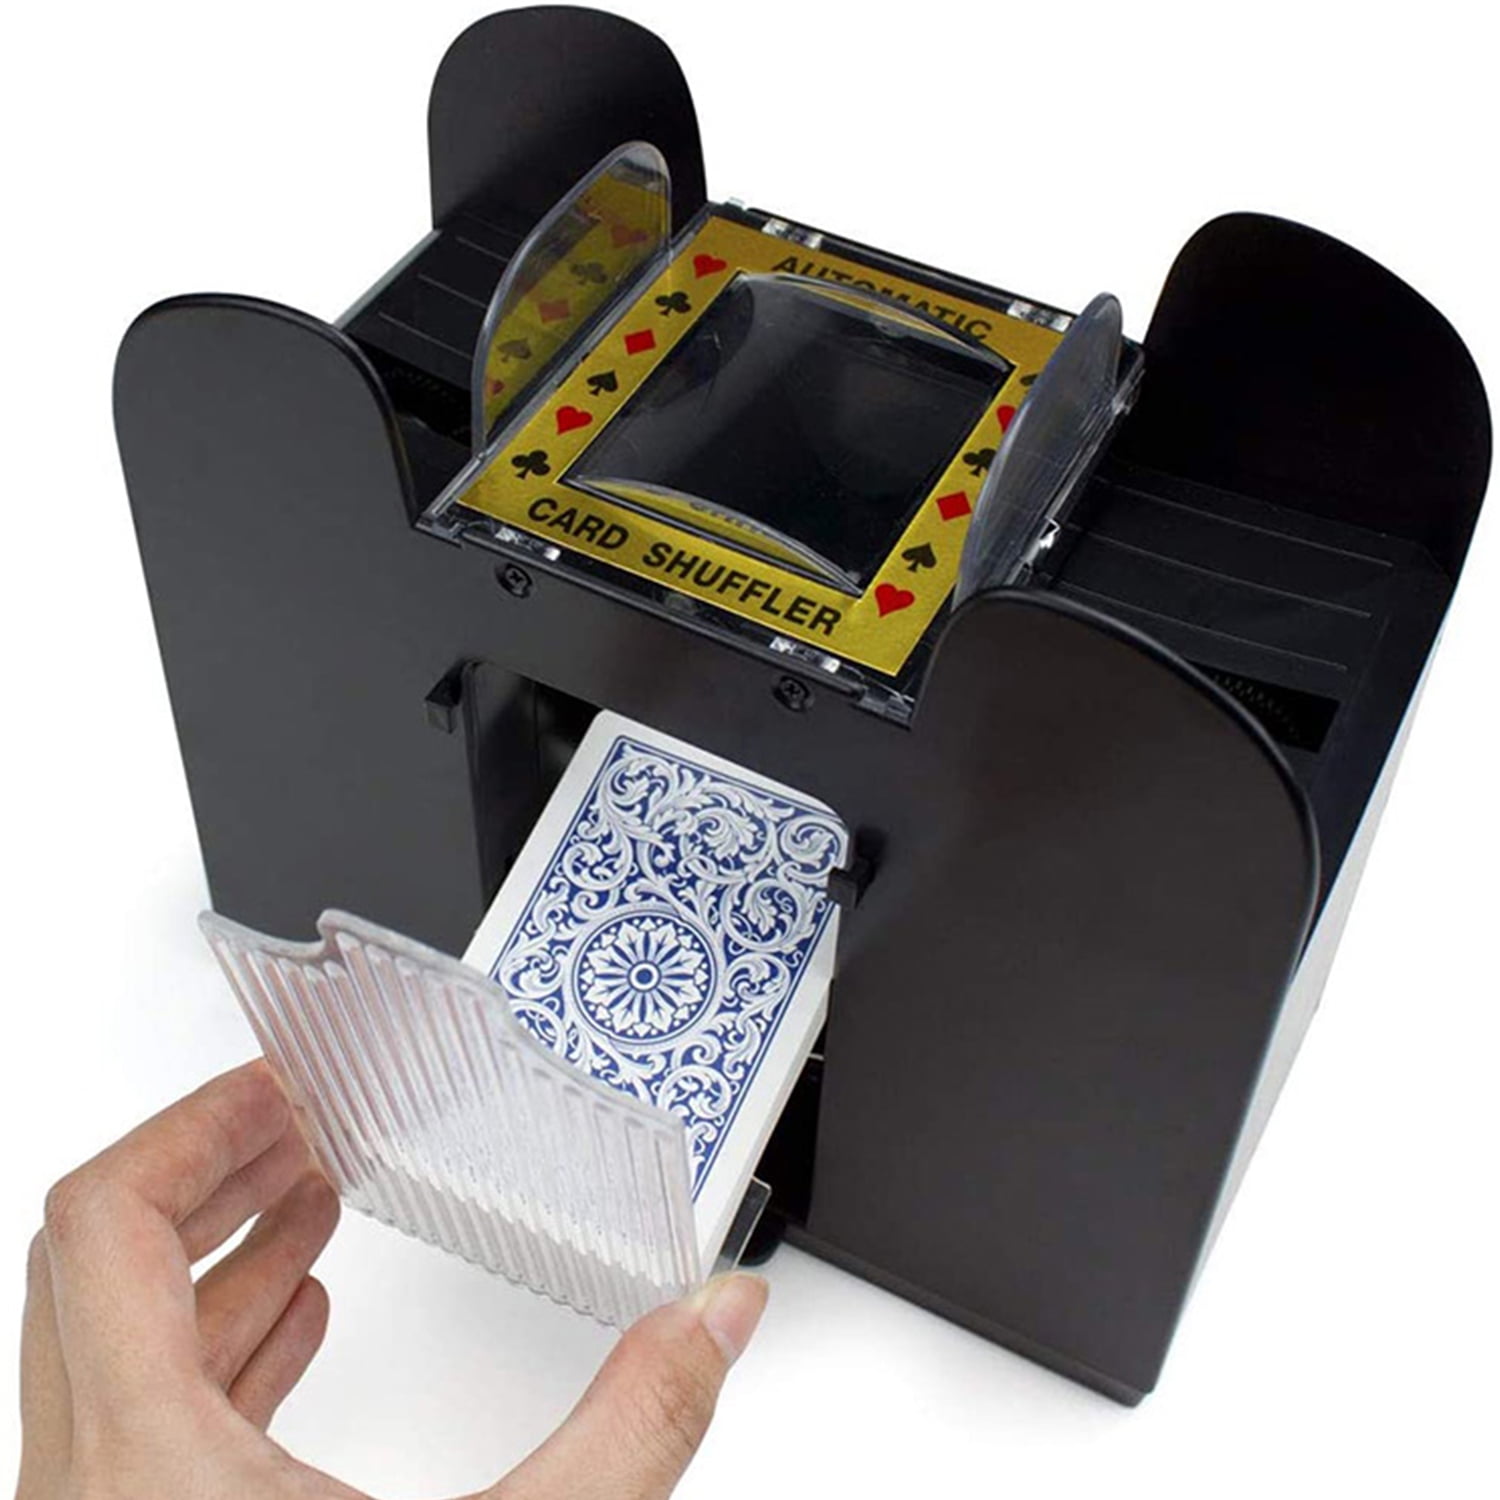 Details about   Automatic Poker Card Shuffler Playing Shuffling Machine Casino Robot Fun Games 